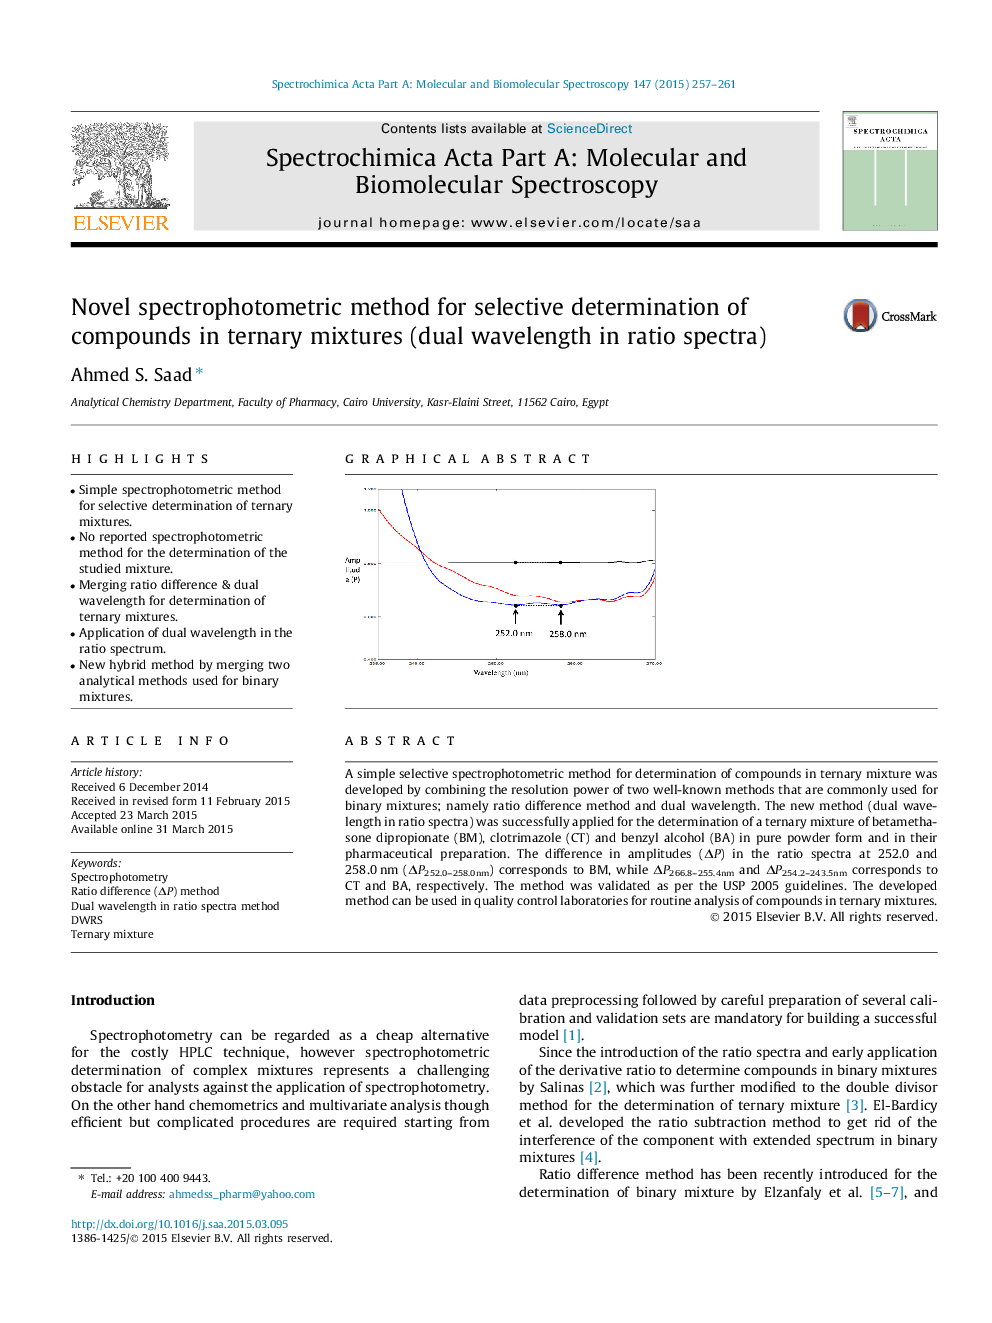 روش اسپکتروفتومتری رمان برای تعیین انتخابی ترکیبات در مخلوط ترکیبی (طول موج دوگانه در طیف نسبت) 